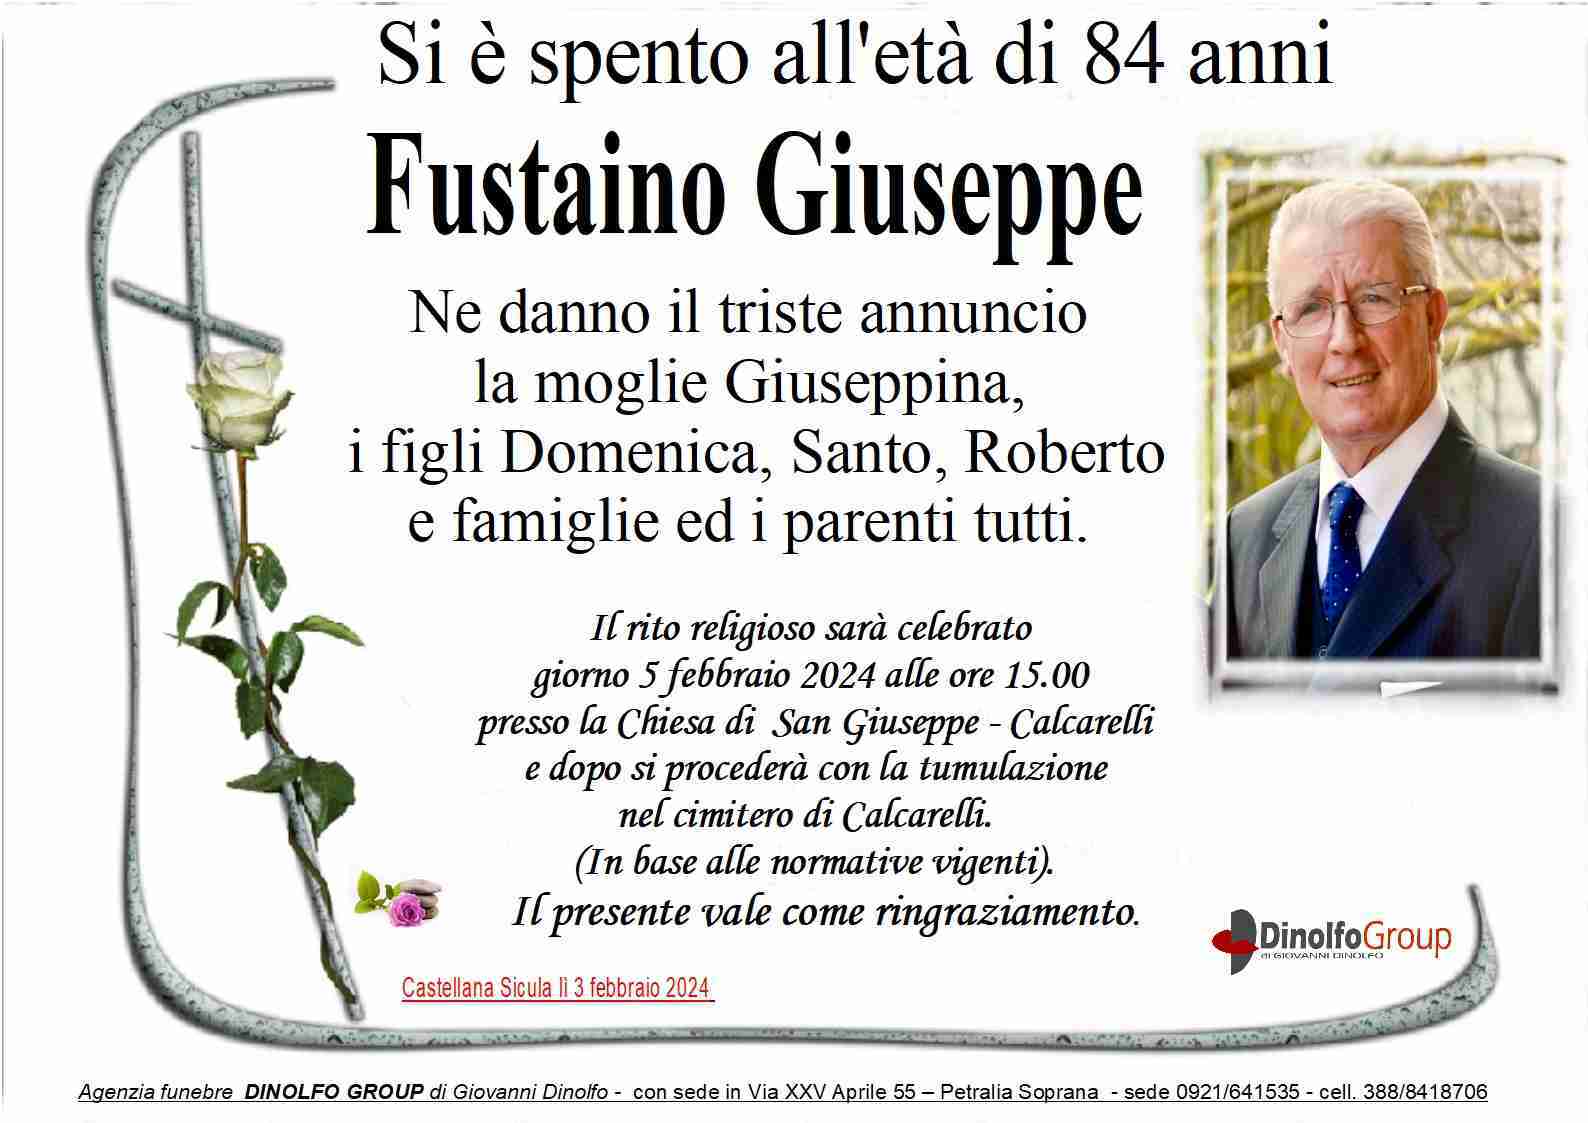 Giuseppe Fustaino